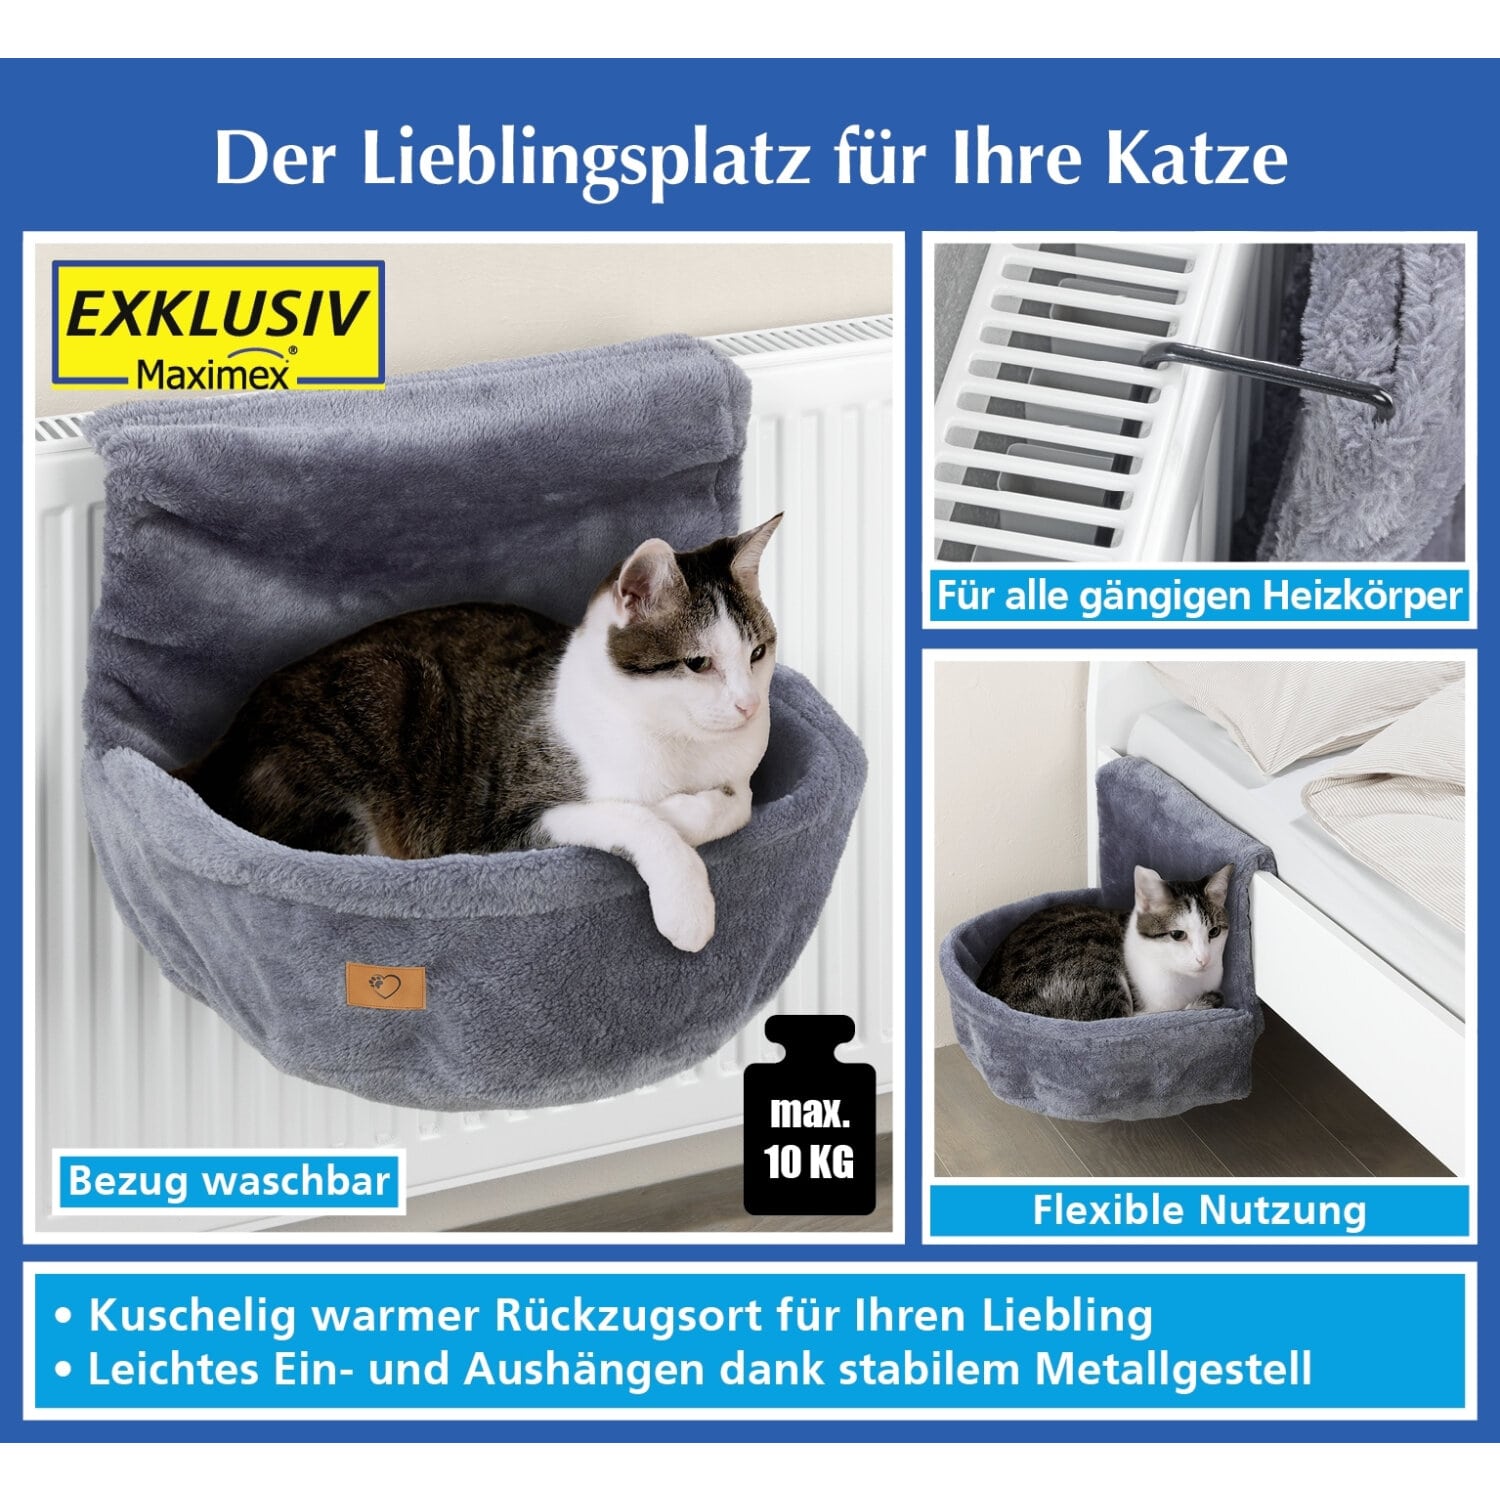 Katzen-Bett für die Heizung - kuscheliger Rückzugsort für Ihren Liebling